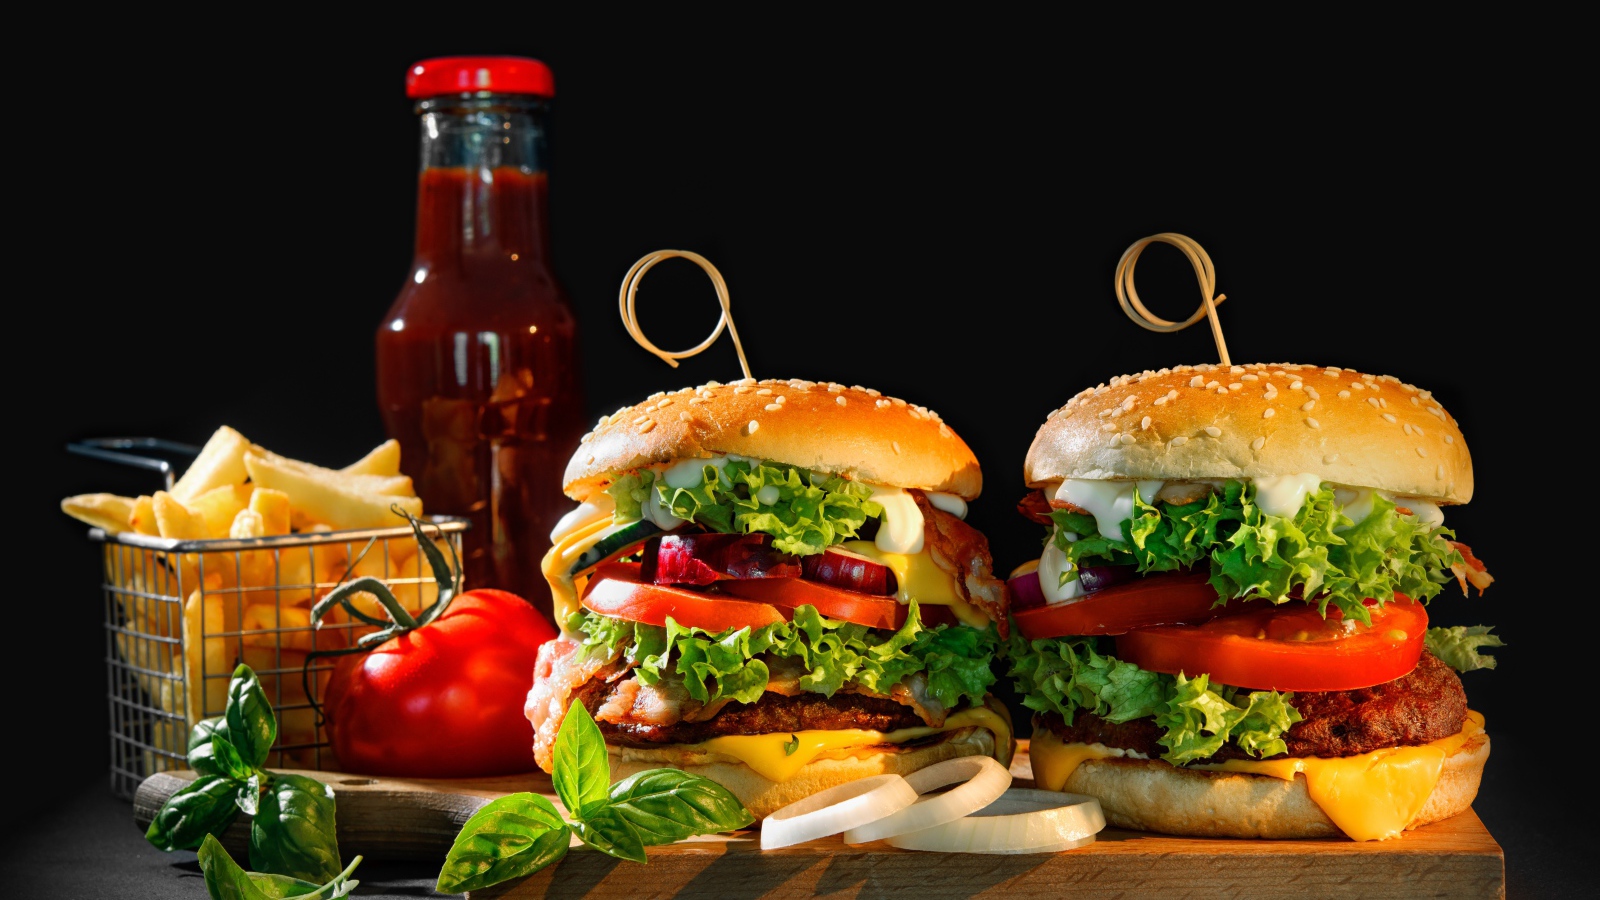 Гамбургеры на столе с картофелем и кетчупом на черном фоне